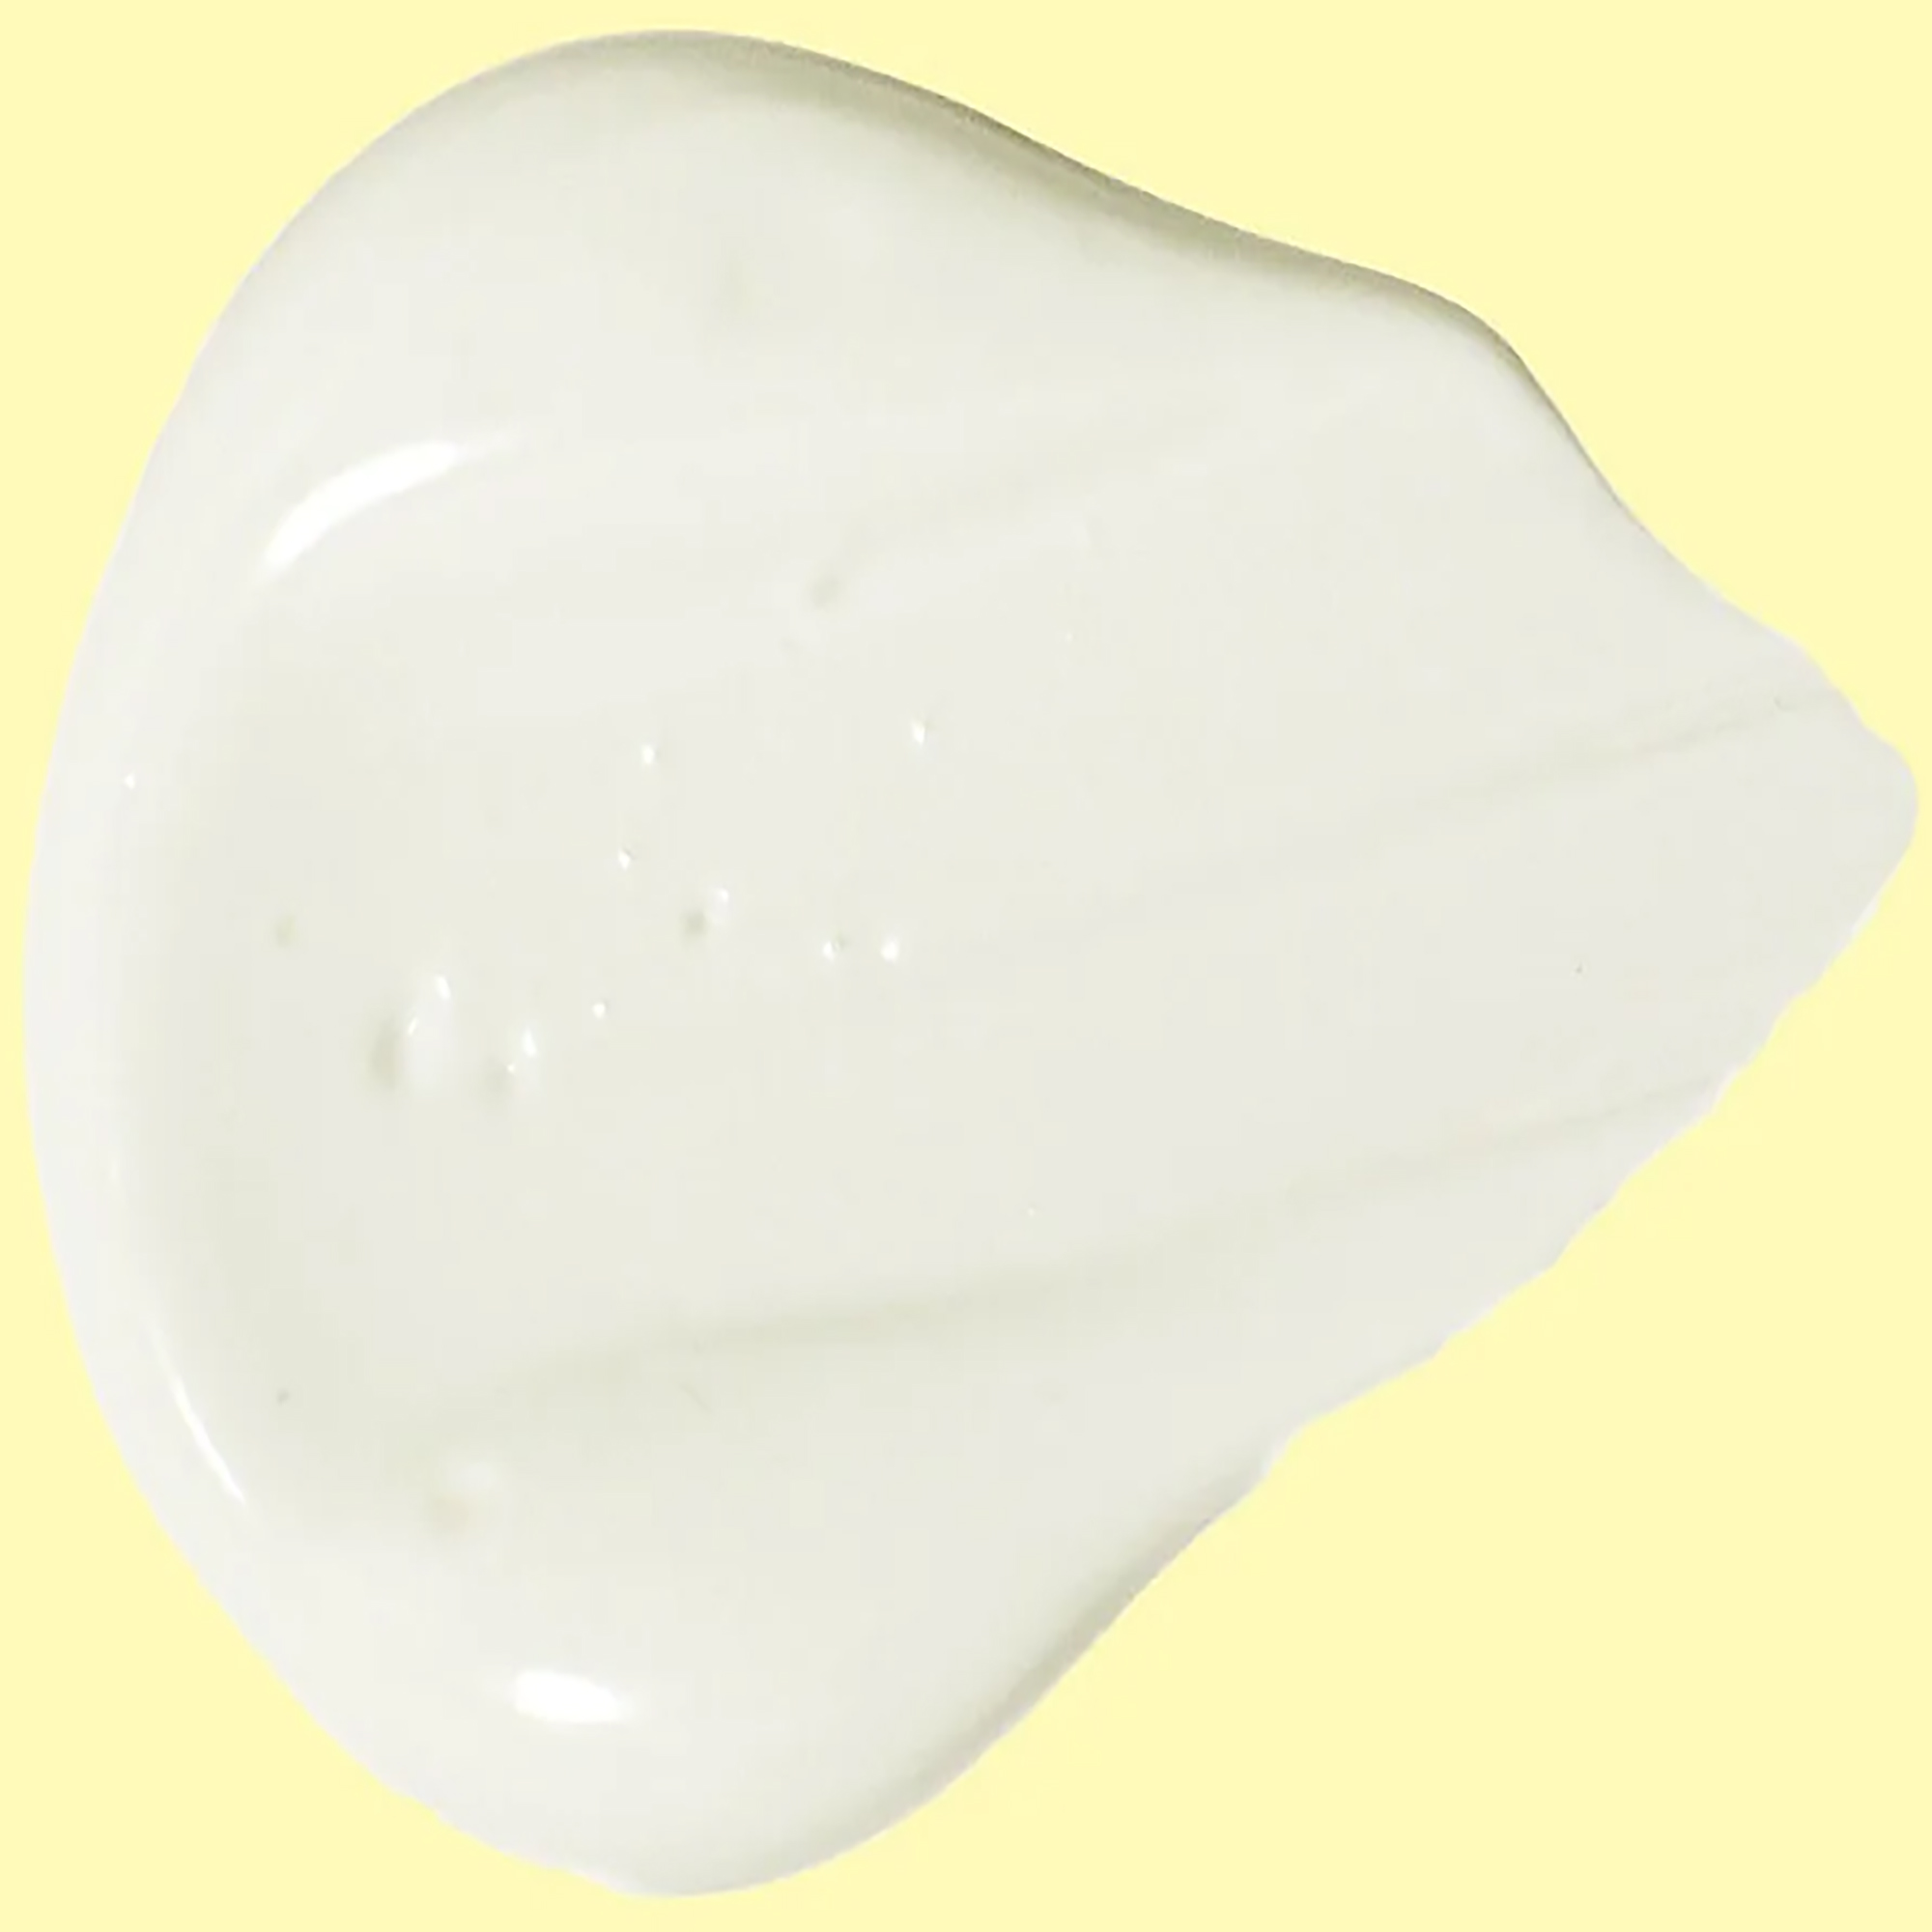 Sun Bum Original Sunscreen Face Lotion Cream